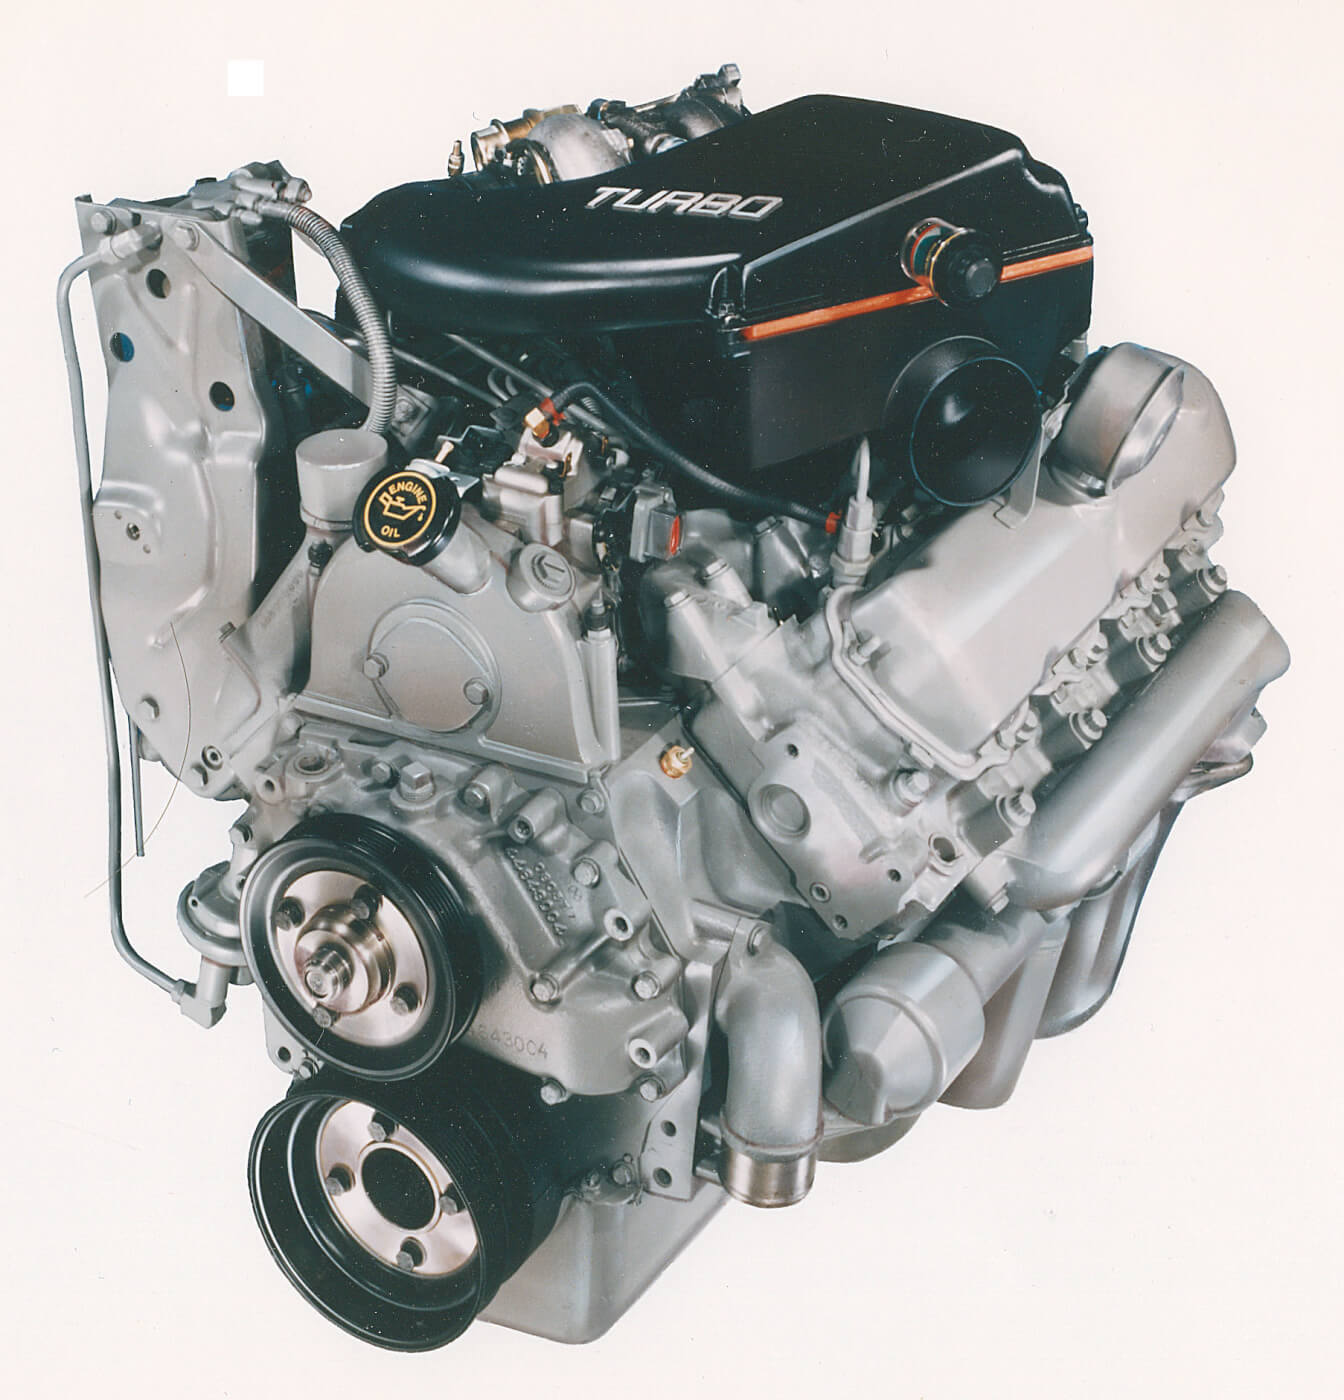 L'apice del Ford IDI era il motore turbo 7.3L IDIT. Era pubblicizzato a 190 CV e 385 lb-ft, ma è generalmente considerato di essere stato sottovalutato e sottotunato da Ford in modo da non mettere in ombra l'imminente Power Stroke. Era un motore considerevolmente più robusto, con pistoni e bielle più robusti, un blocco più forte (numero di fusione 10809000C3) e guarnizioni di testa, valvole di scarico Inconel e un radiatore dell'olio più grande. 